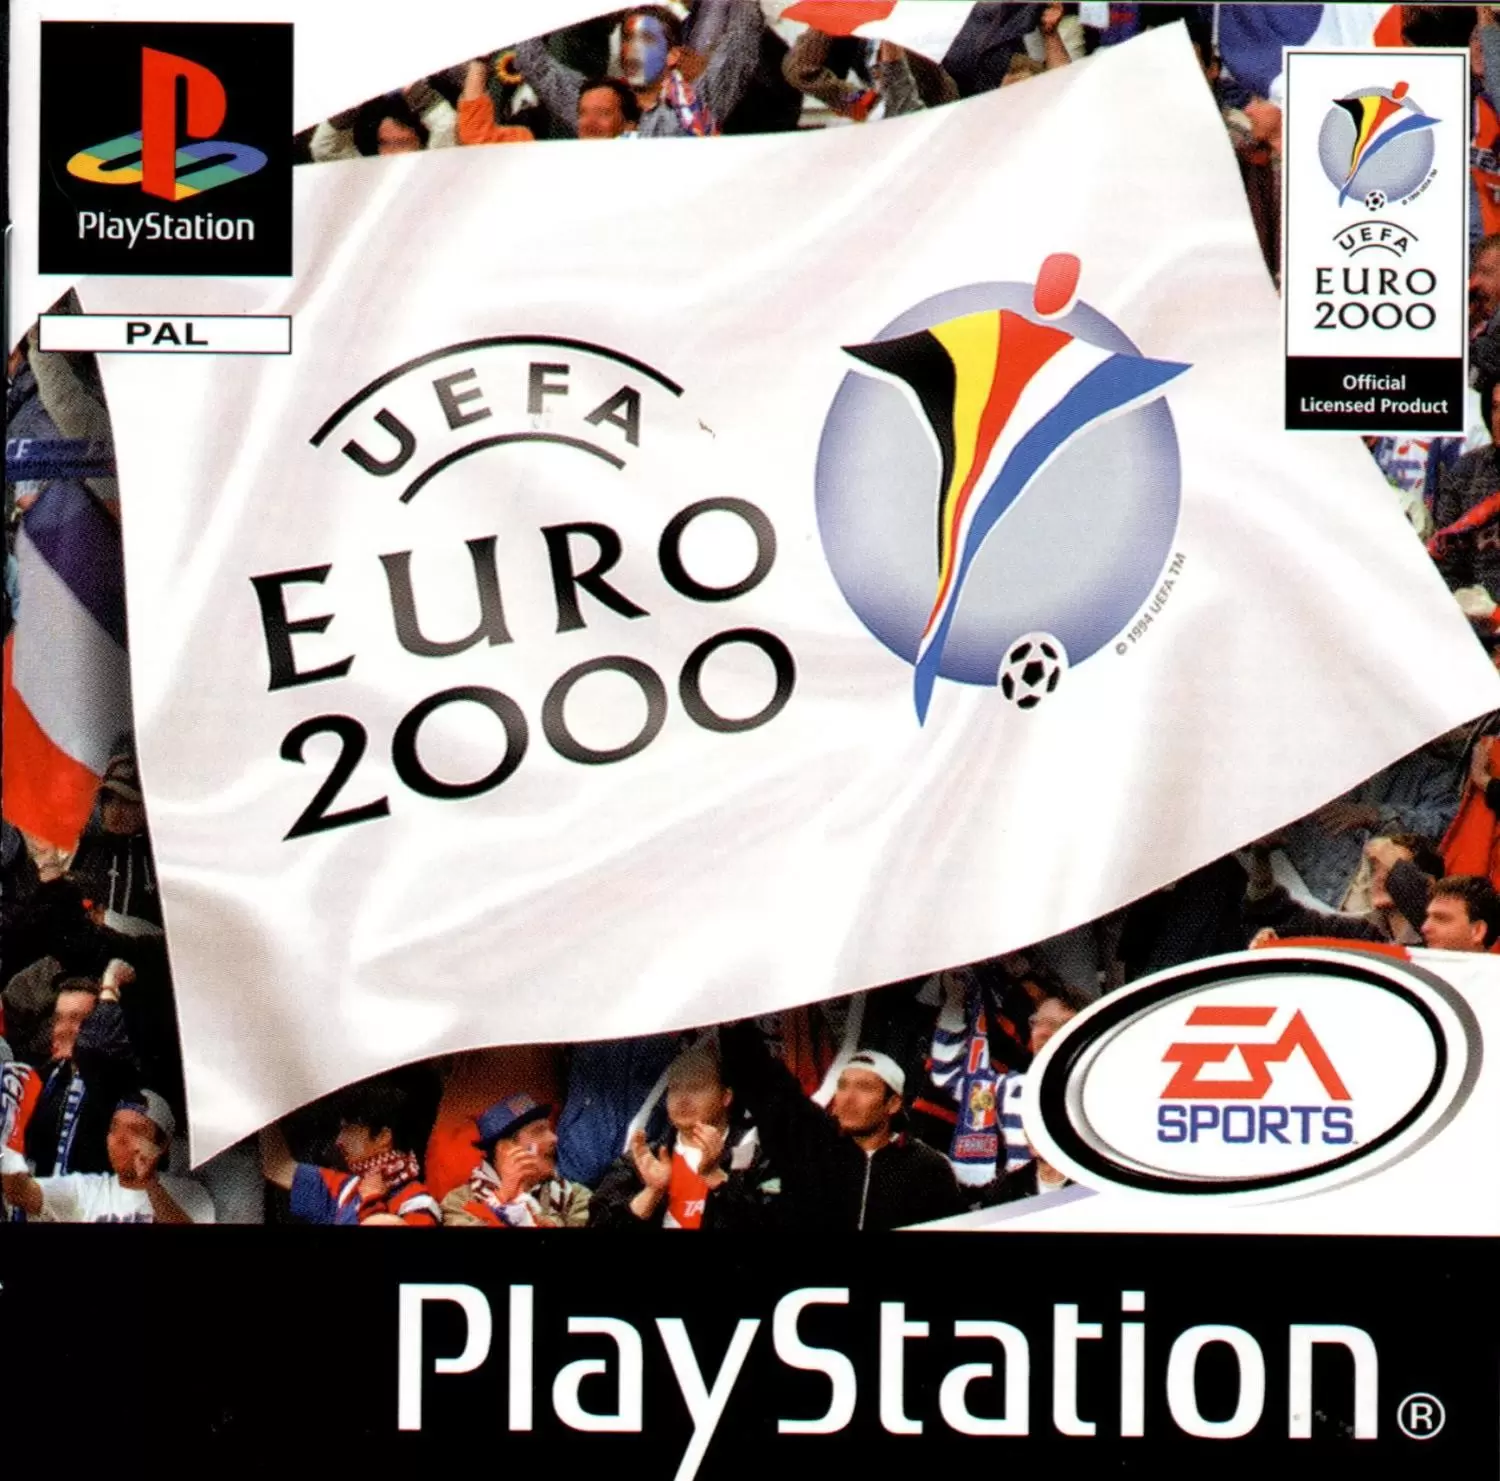 Playstation games - UEFA Euro 2000